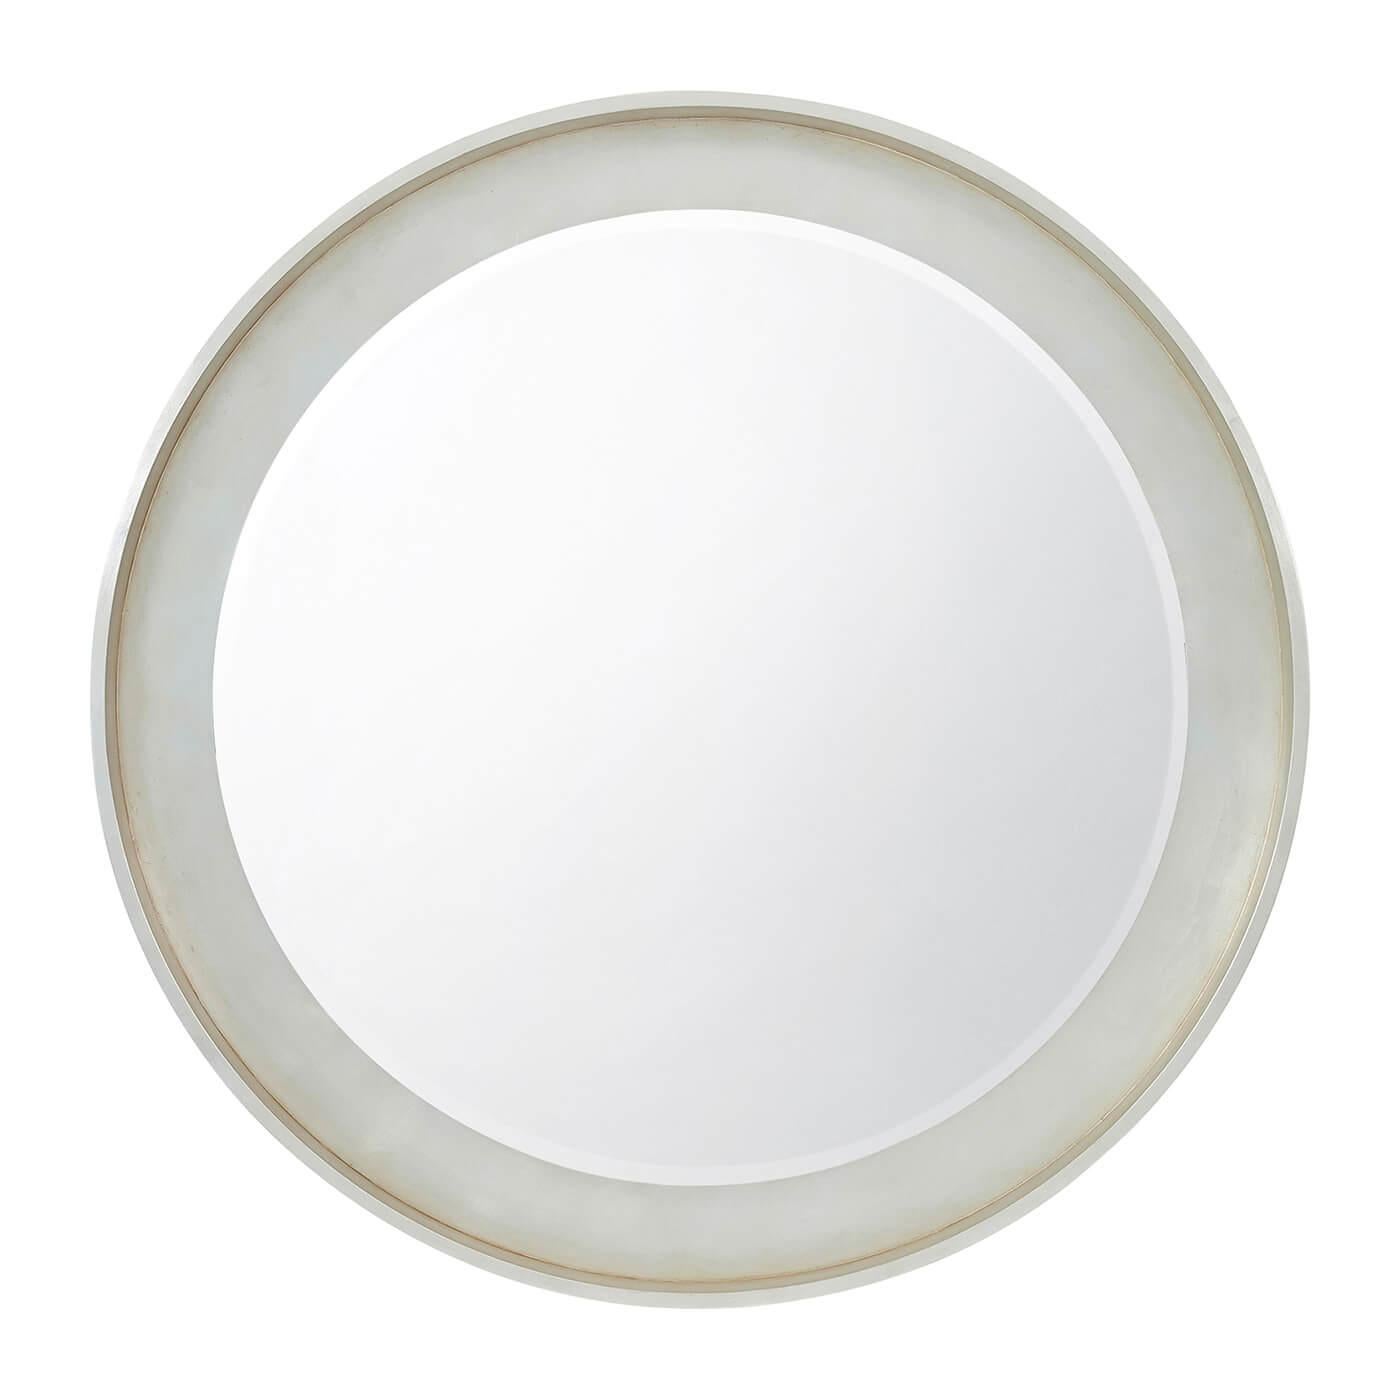 Miroir moderne à bord moulé en feuille d'argent avec une plaque de miroir flottante à bord biseauté.

Dimensions : 54